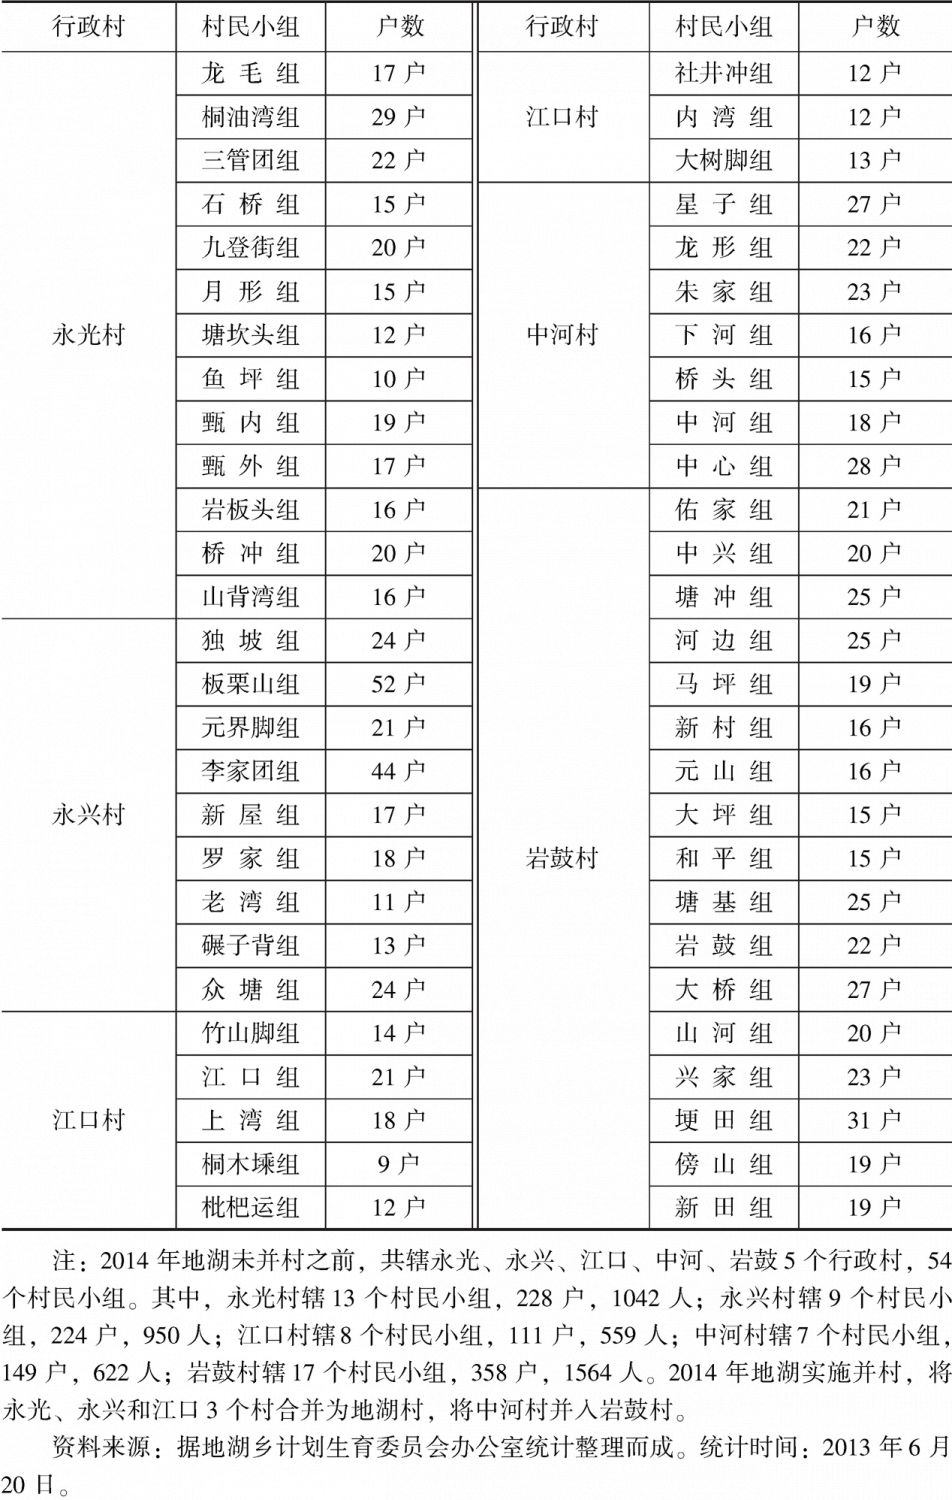 表1-1 2014年以前地湖乡各村民小组户数统计